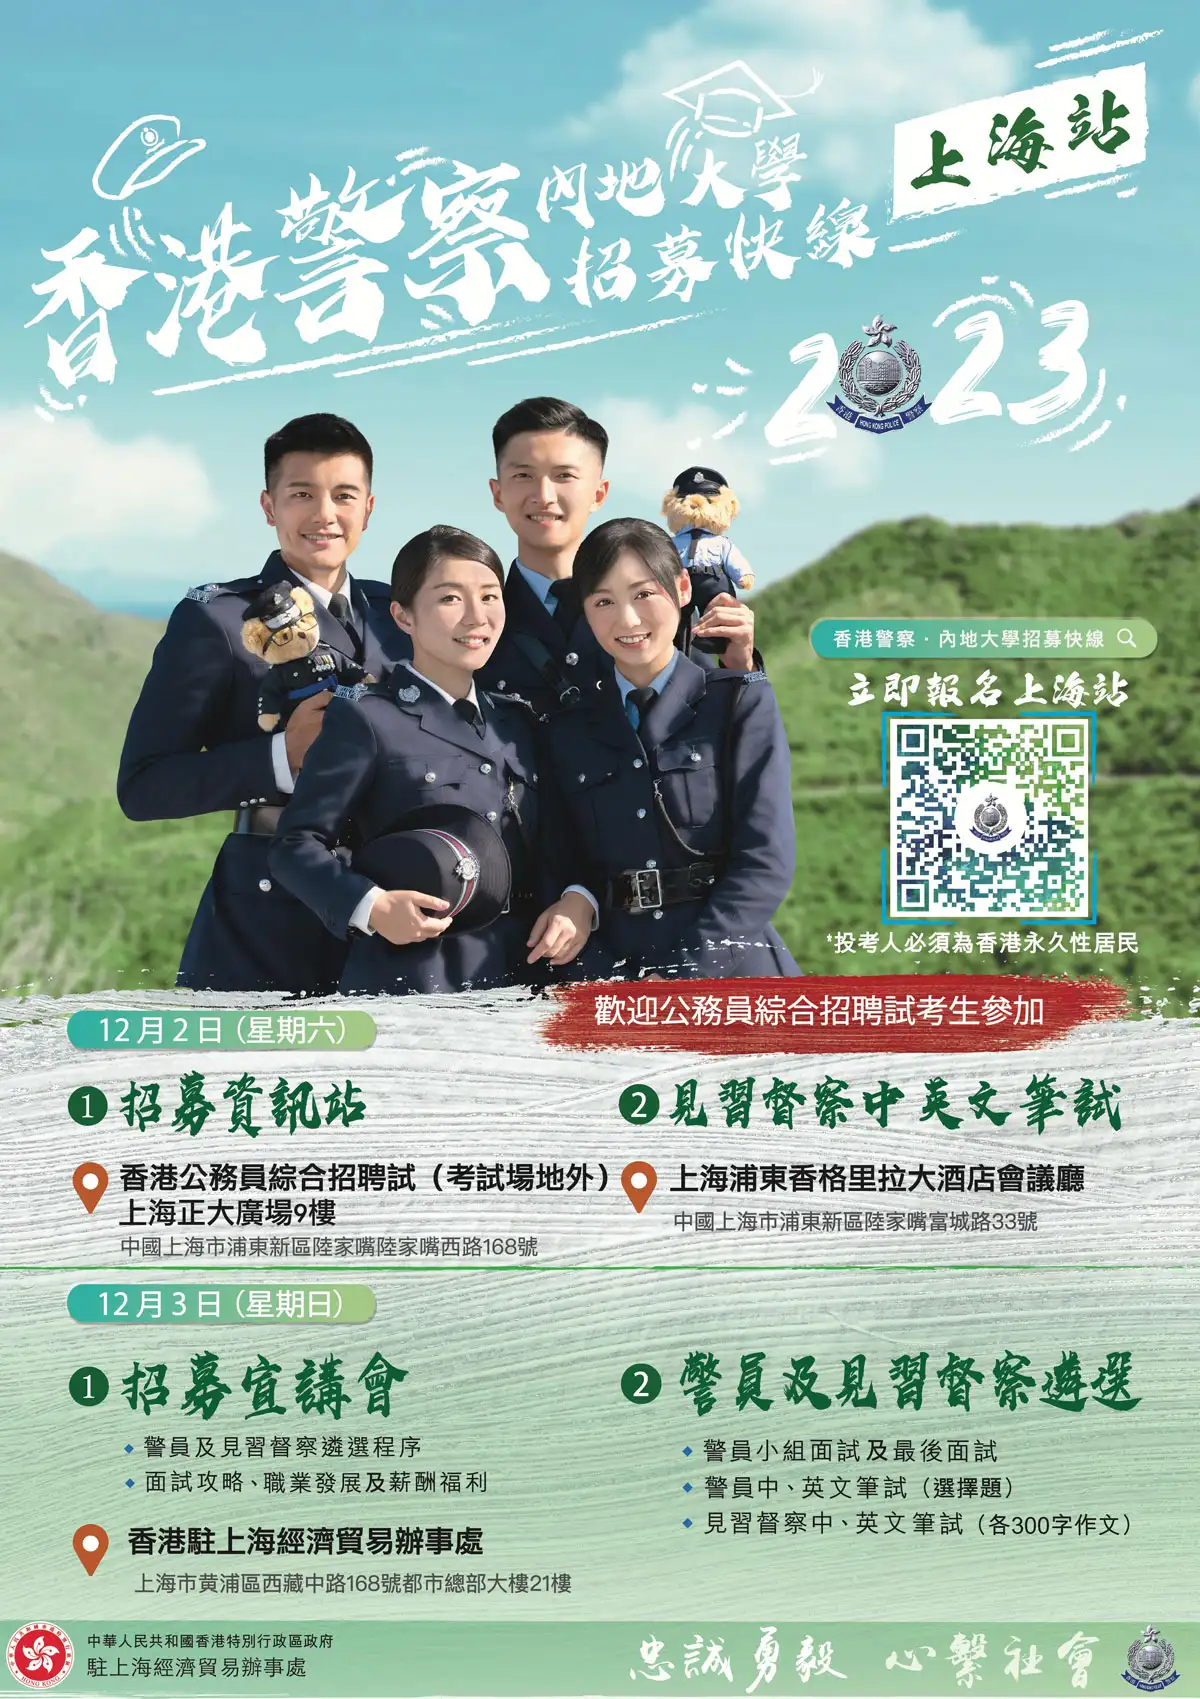 香港警察 ‧ 内地大学招募快线 (上海站)